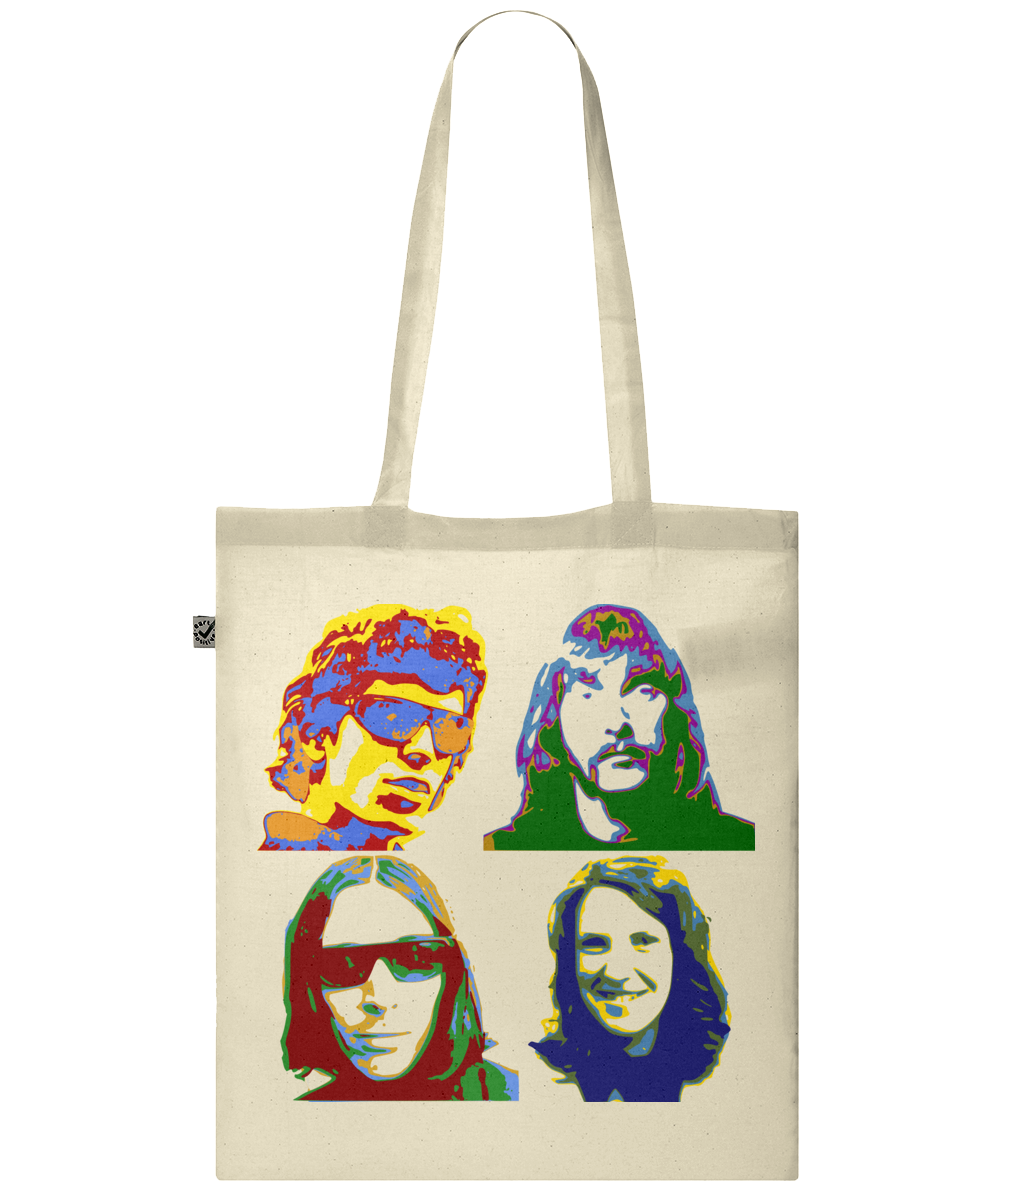 The Velvet Underground tote shopping bag